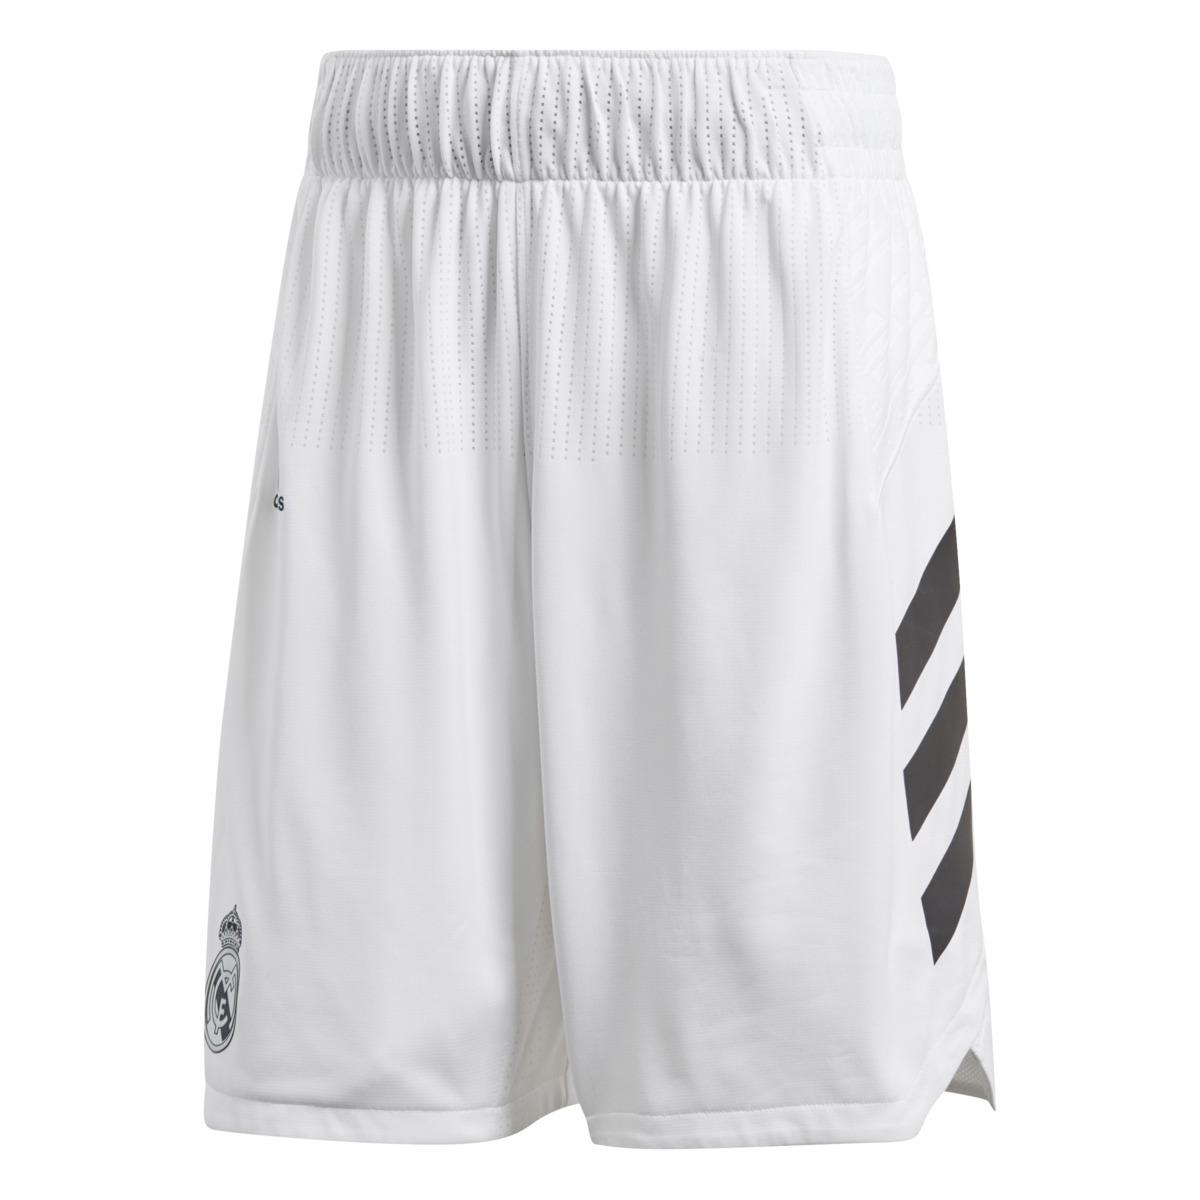 Real Madrid Adidas Shorts